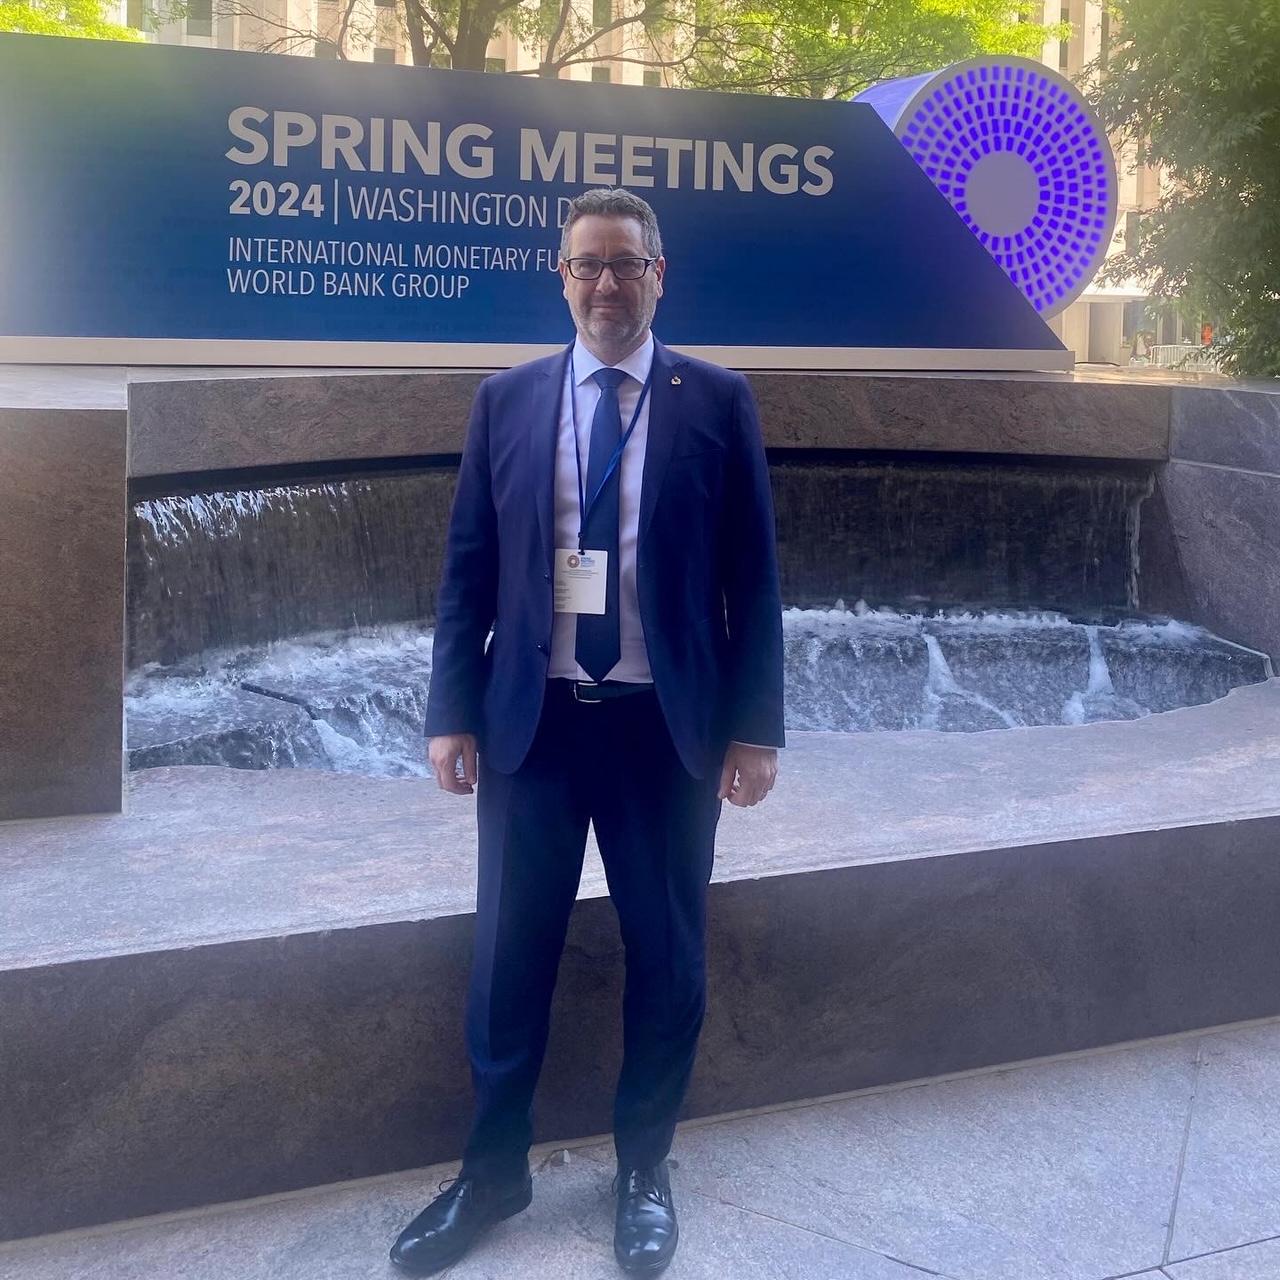 Svariati gli incontri bilaterali per il Segretario di Stato per le Finanze e il Bilancio Marco Gatti impegnato agli Spring Meetings di Washington.